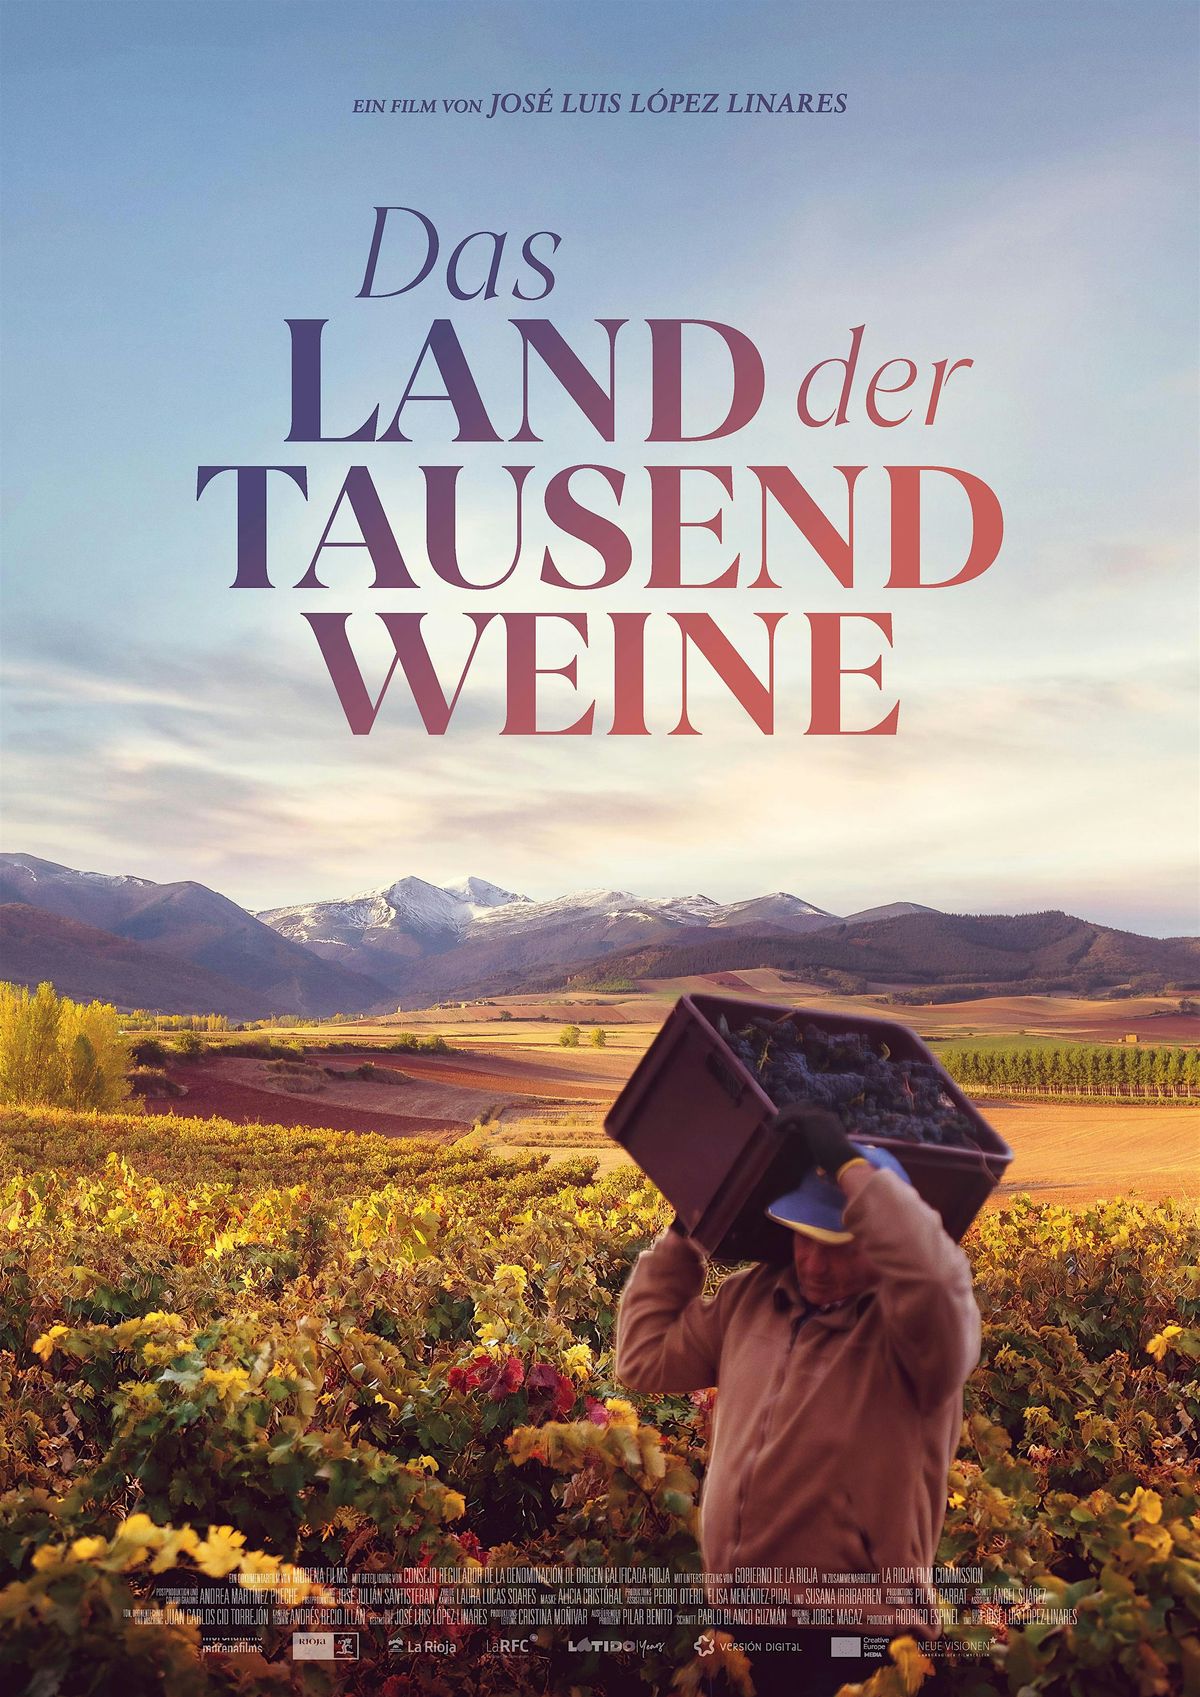 FILM (Doku) - Das Land der tausend Weine (Land of the thousand wines)